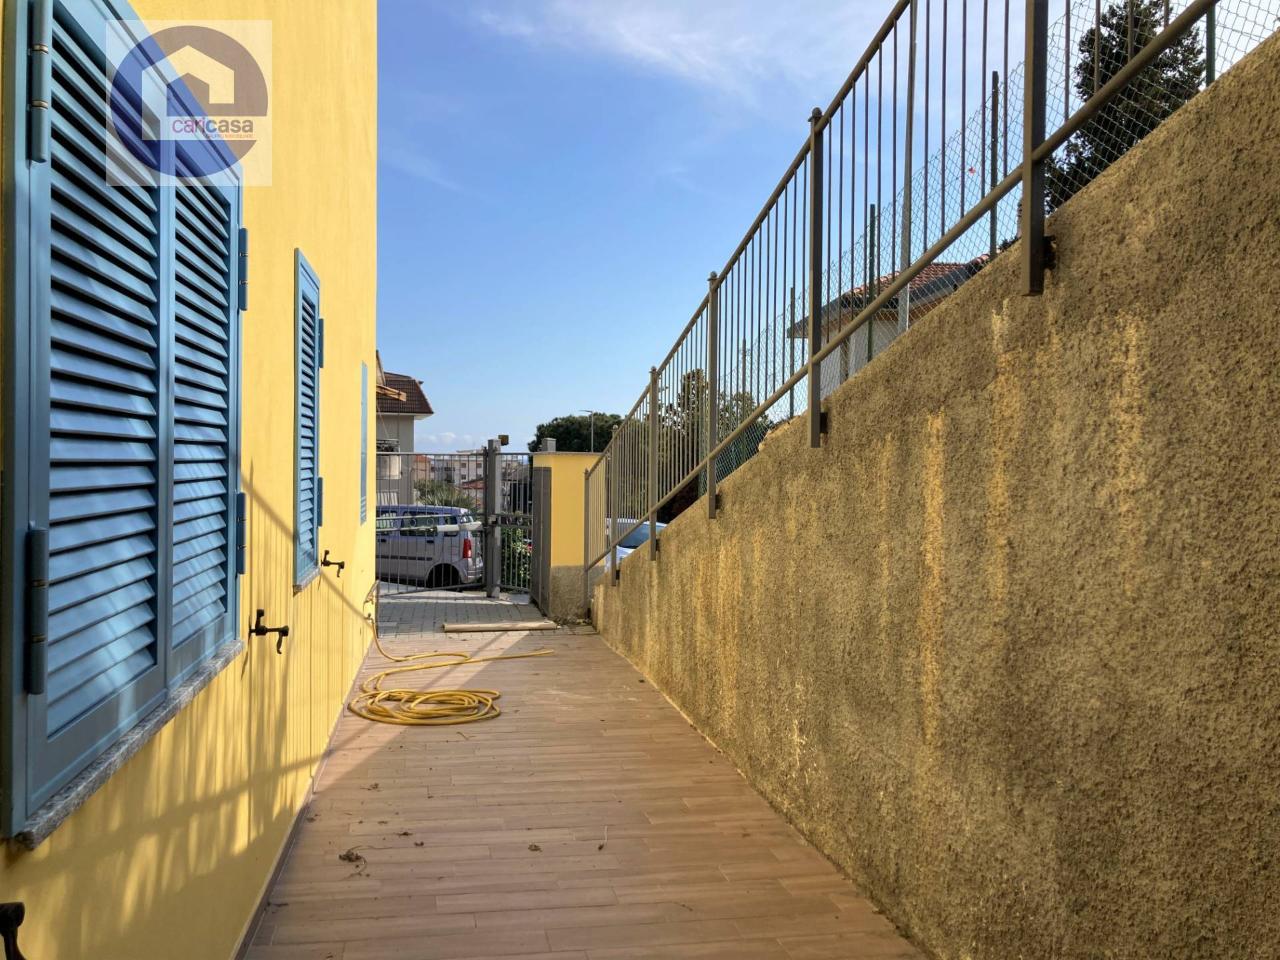 Appartamento in vendita a Riva Ligure